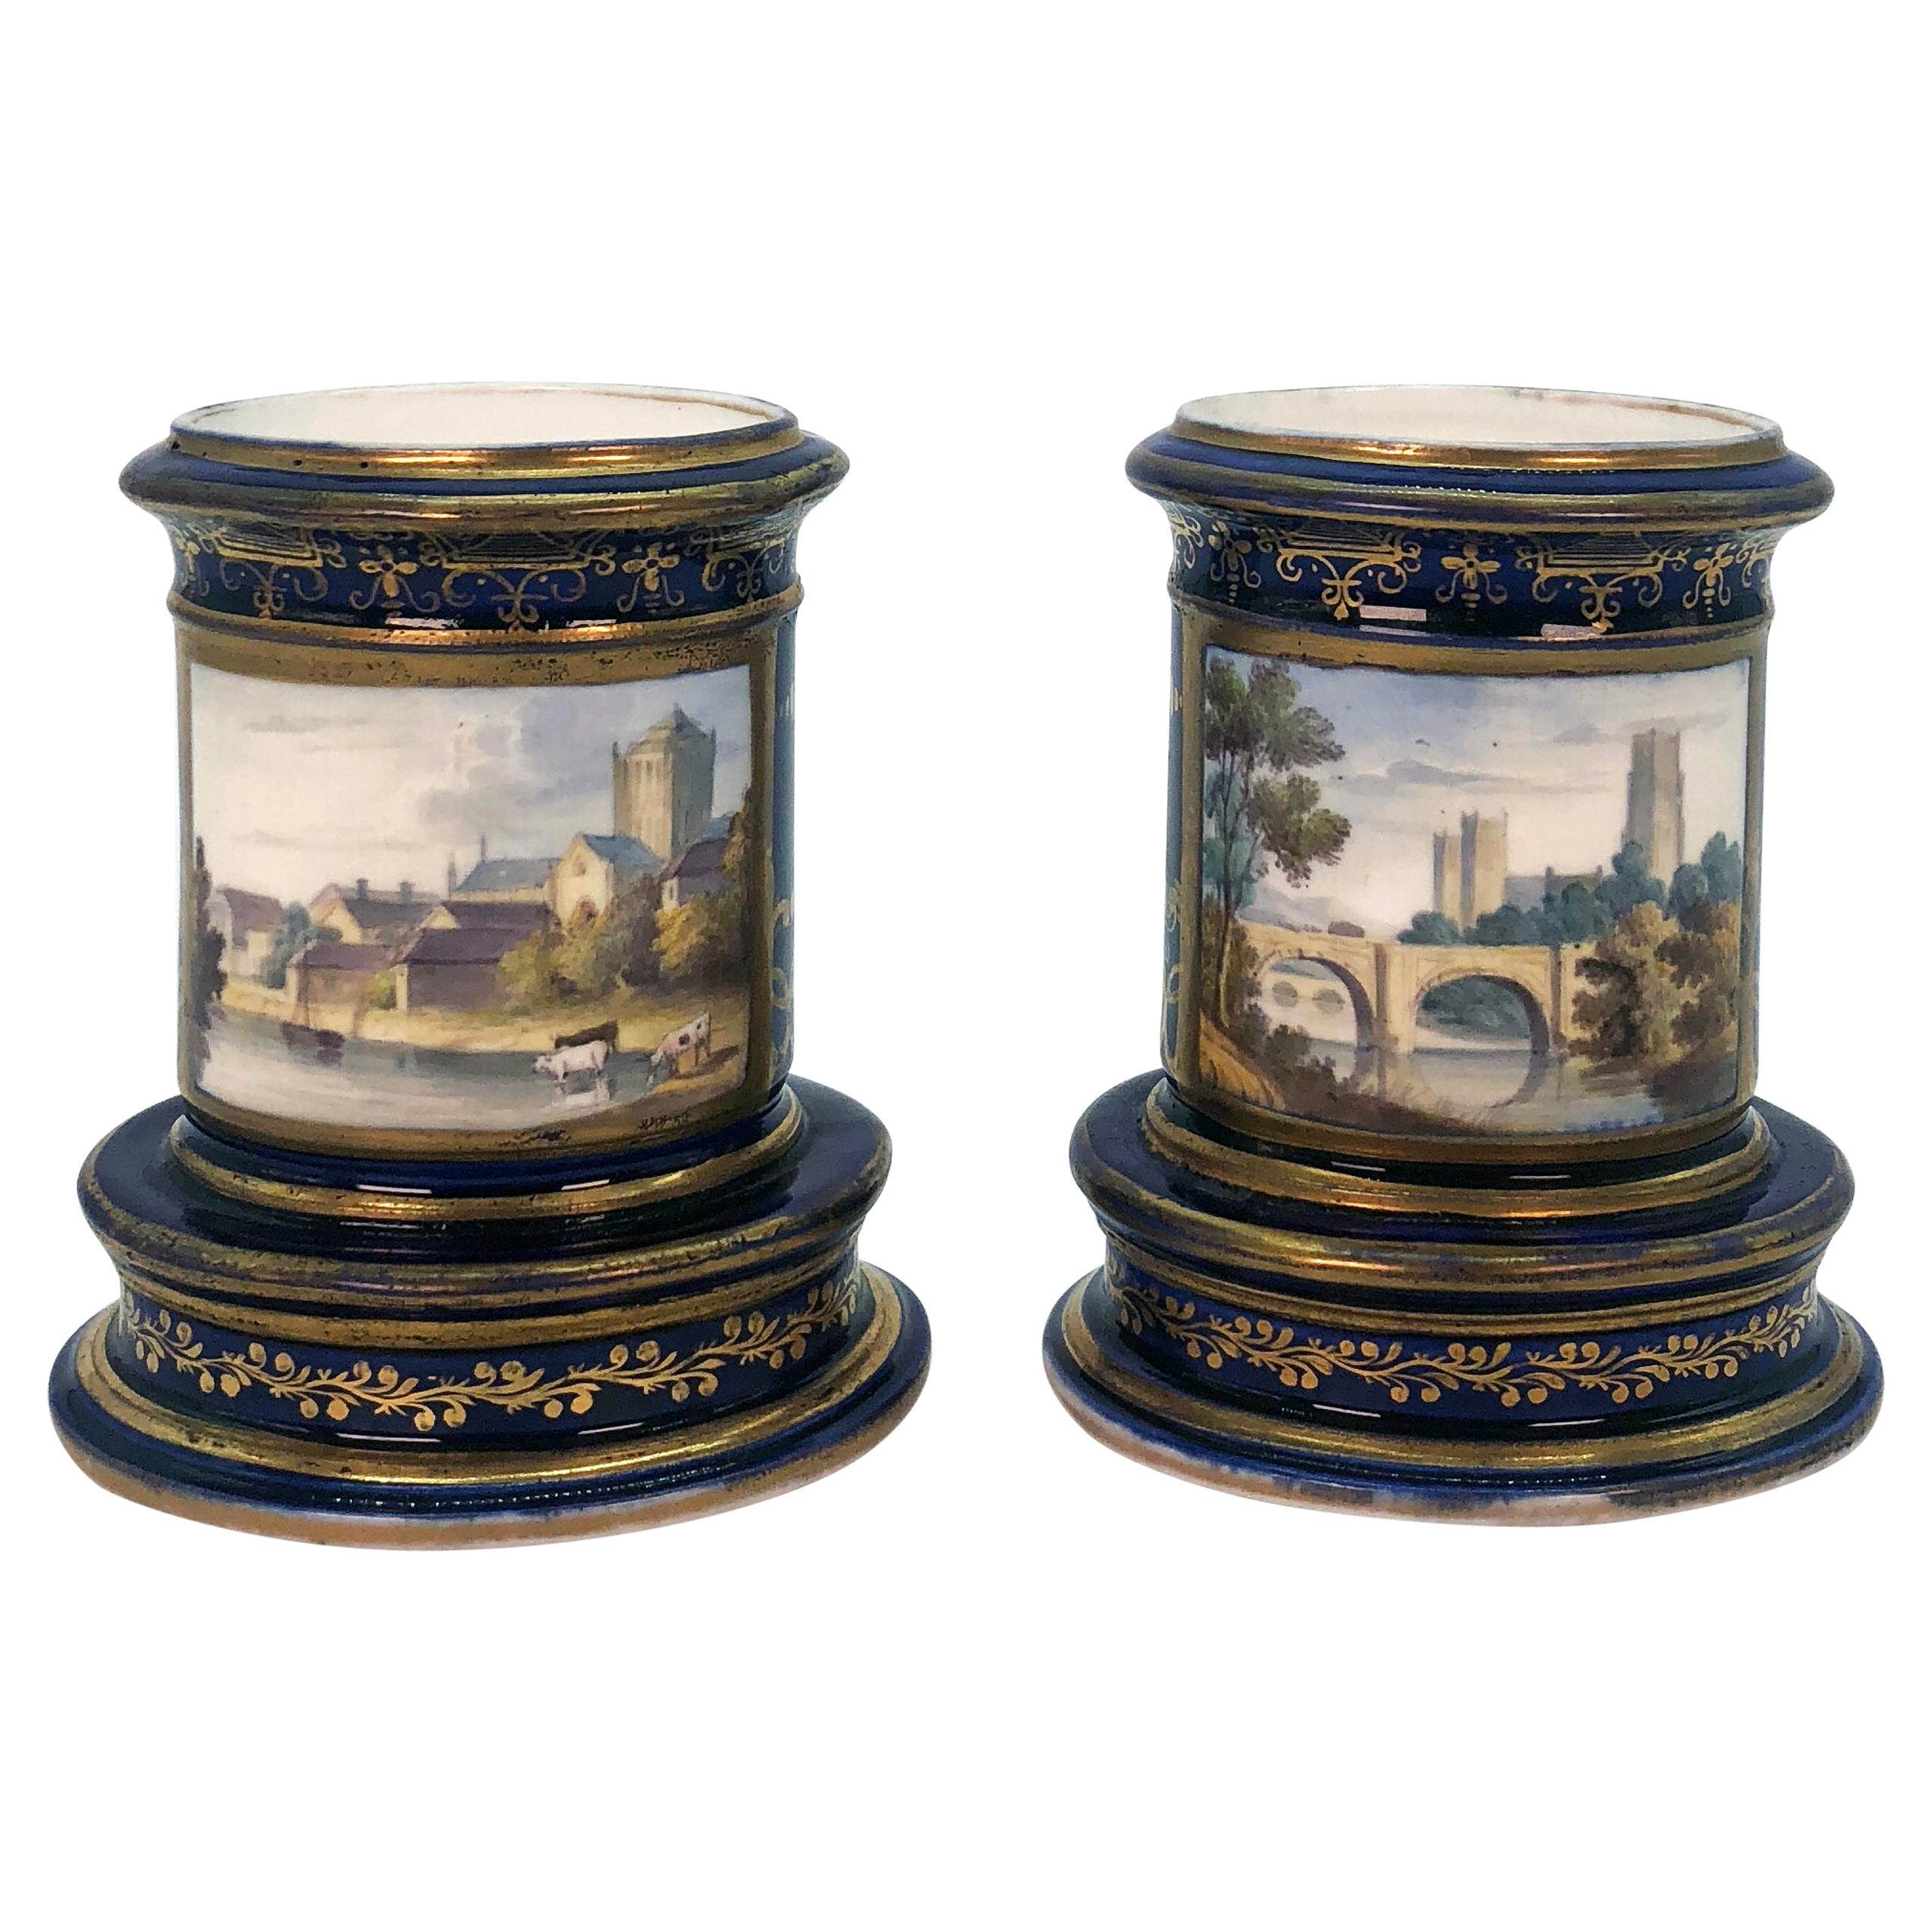 Pair of Spode Porcelain Spill Vases, circa 1820